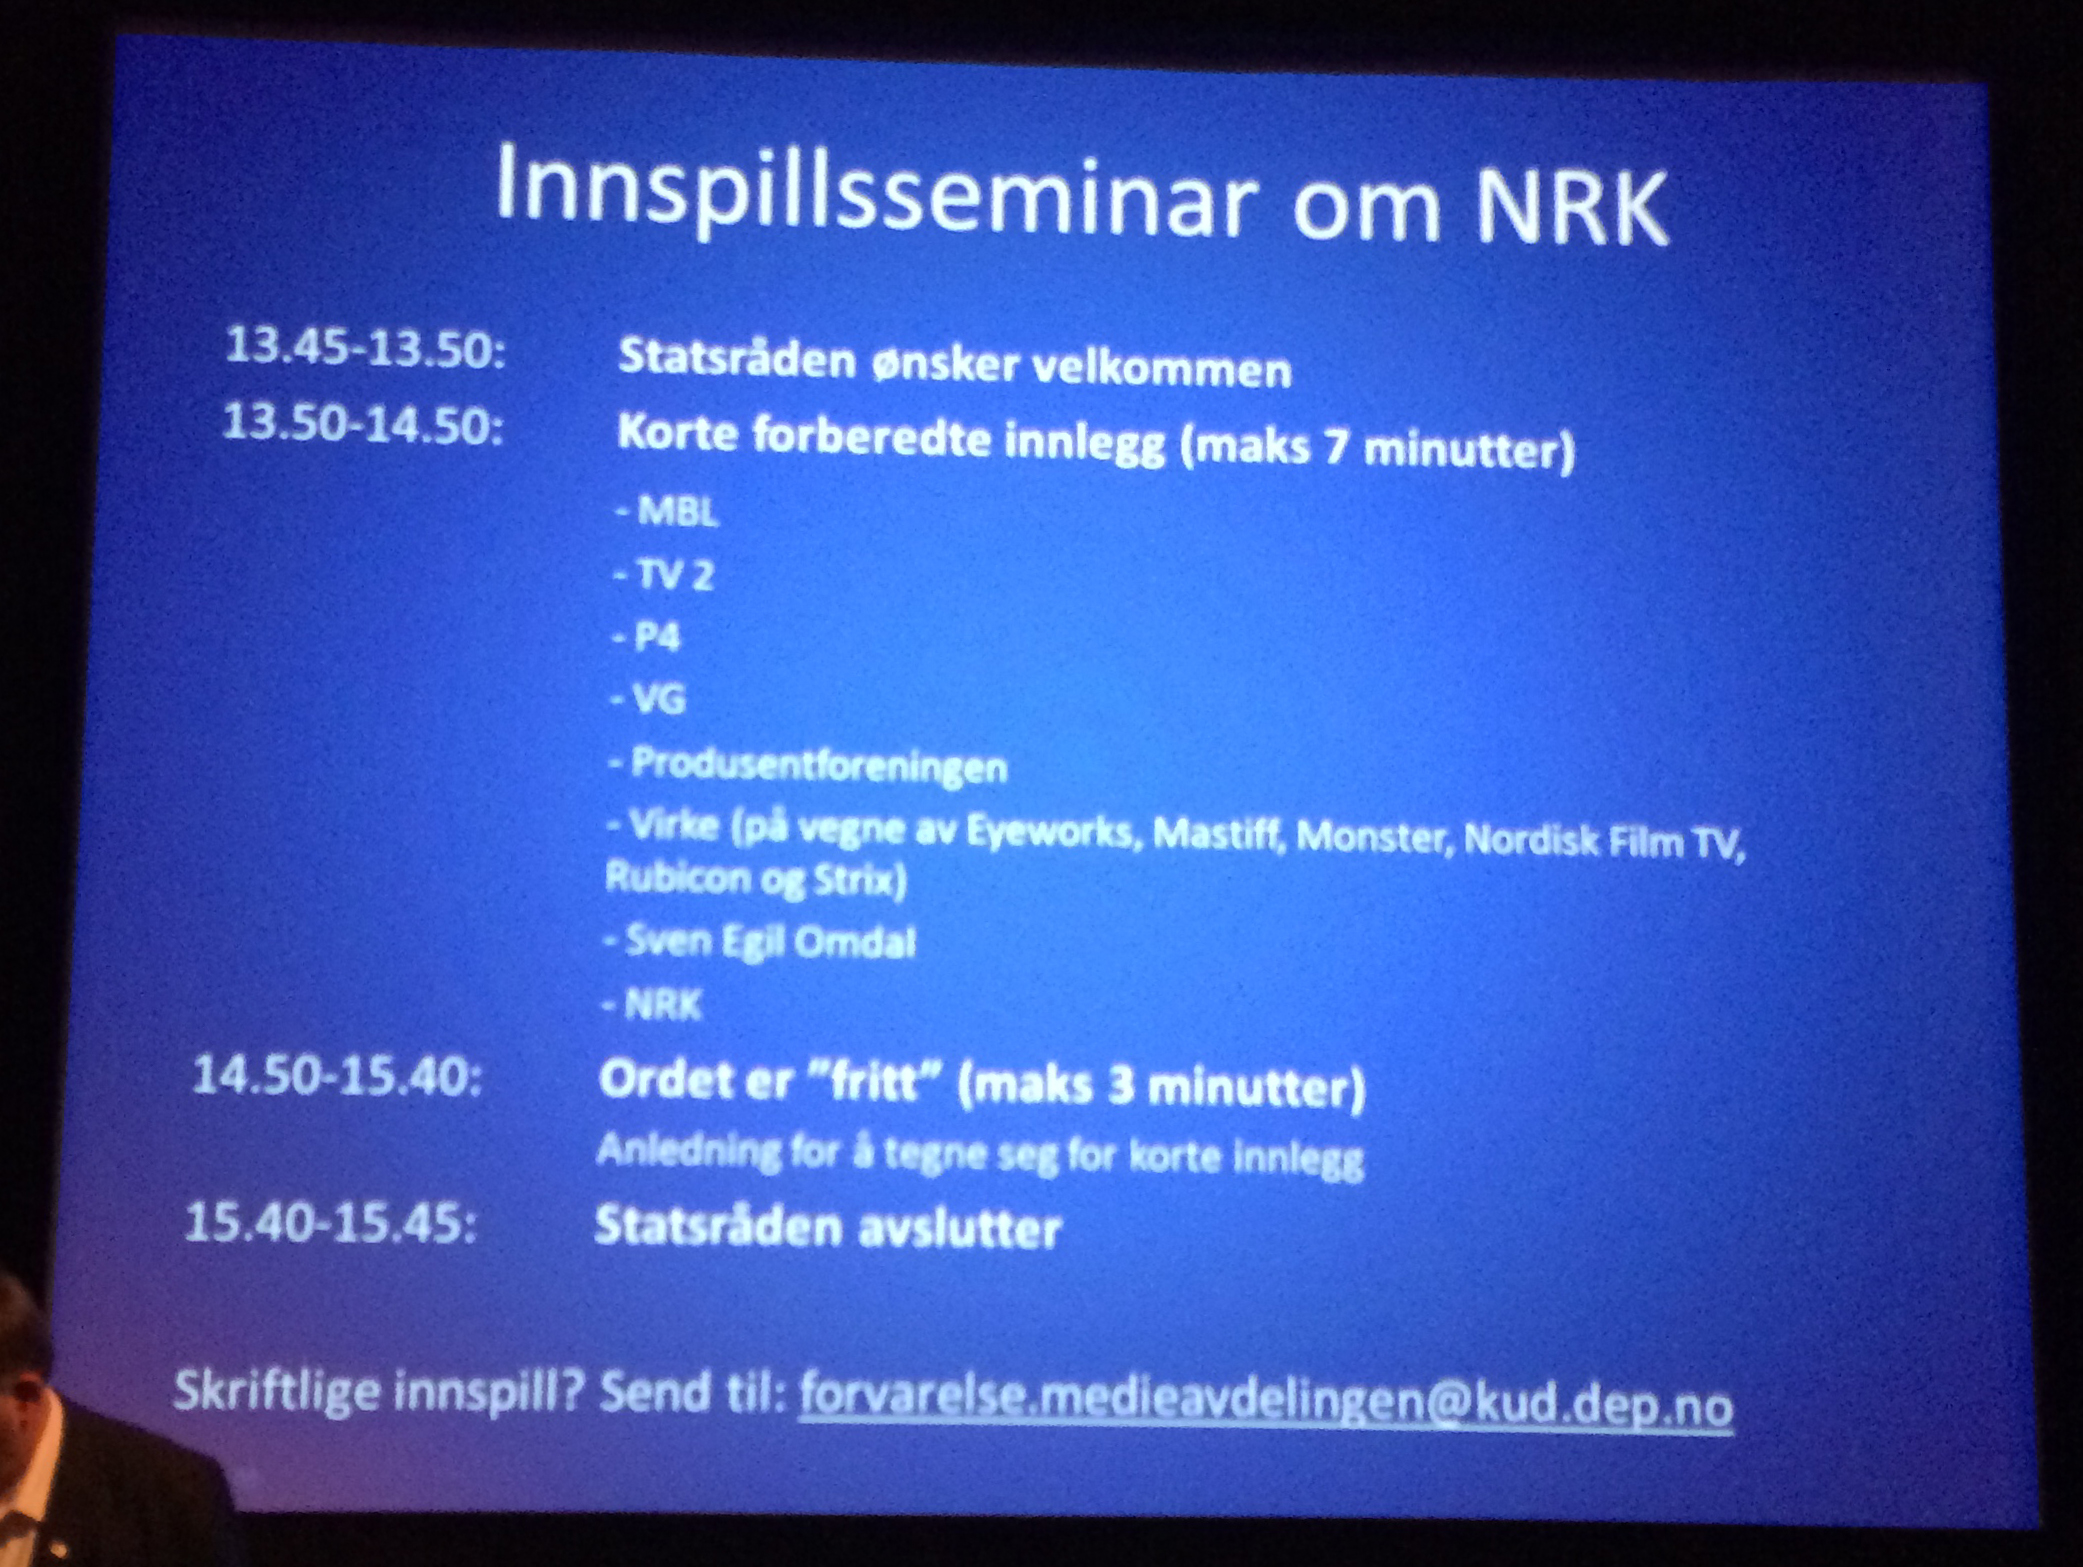 Program Innspillsseminar  om NRK, 17. juni 2014